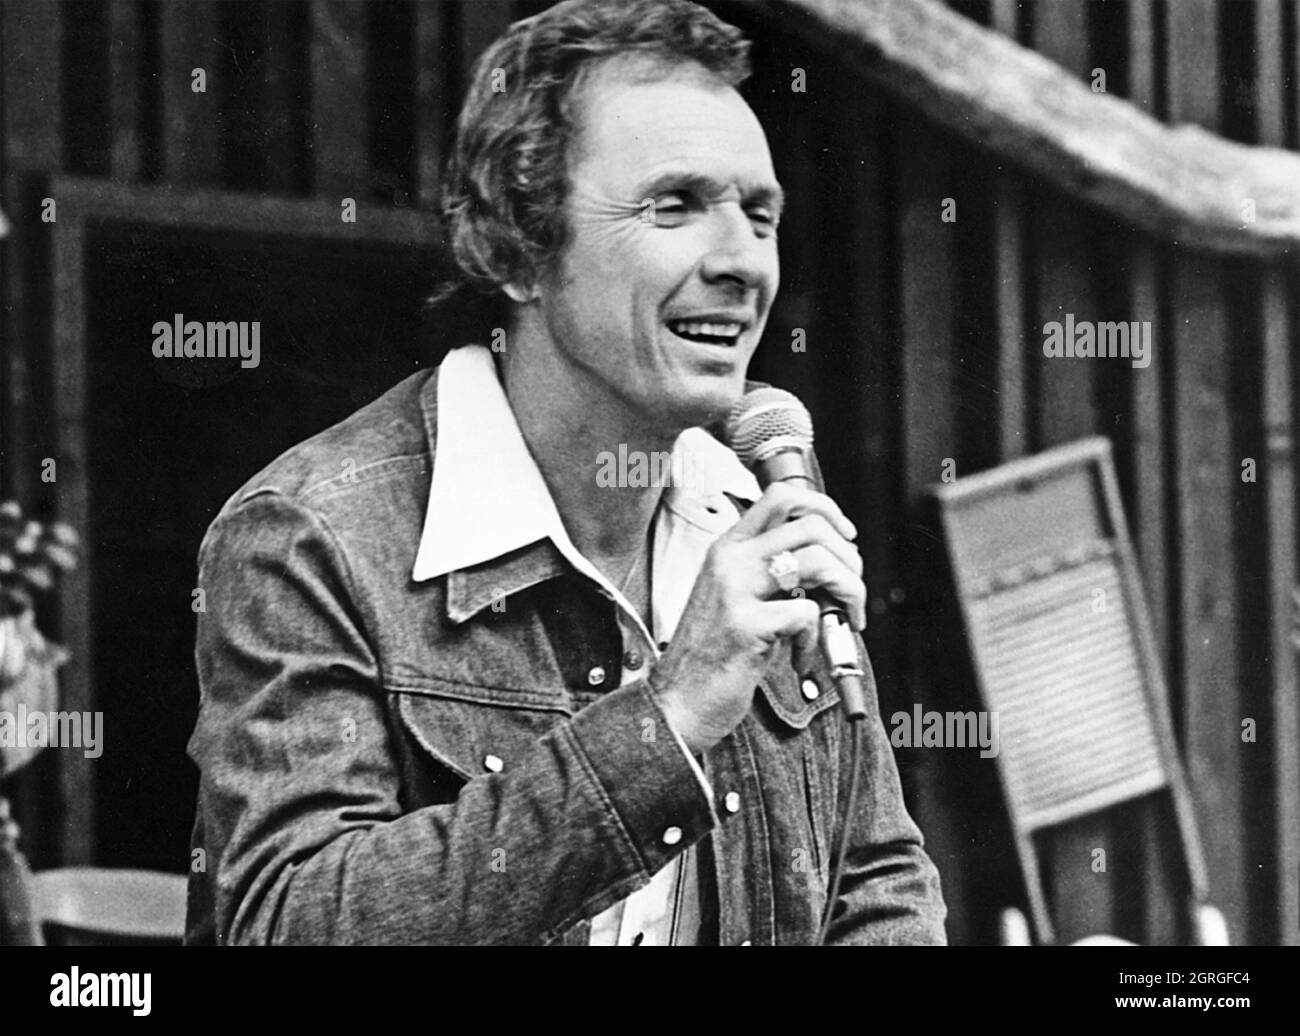 MEL TILLS (1932-2017) Foto promocional de la cantante y compositora estadounidense de música country alrededor de 1972 Foto de stock